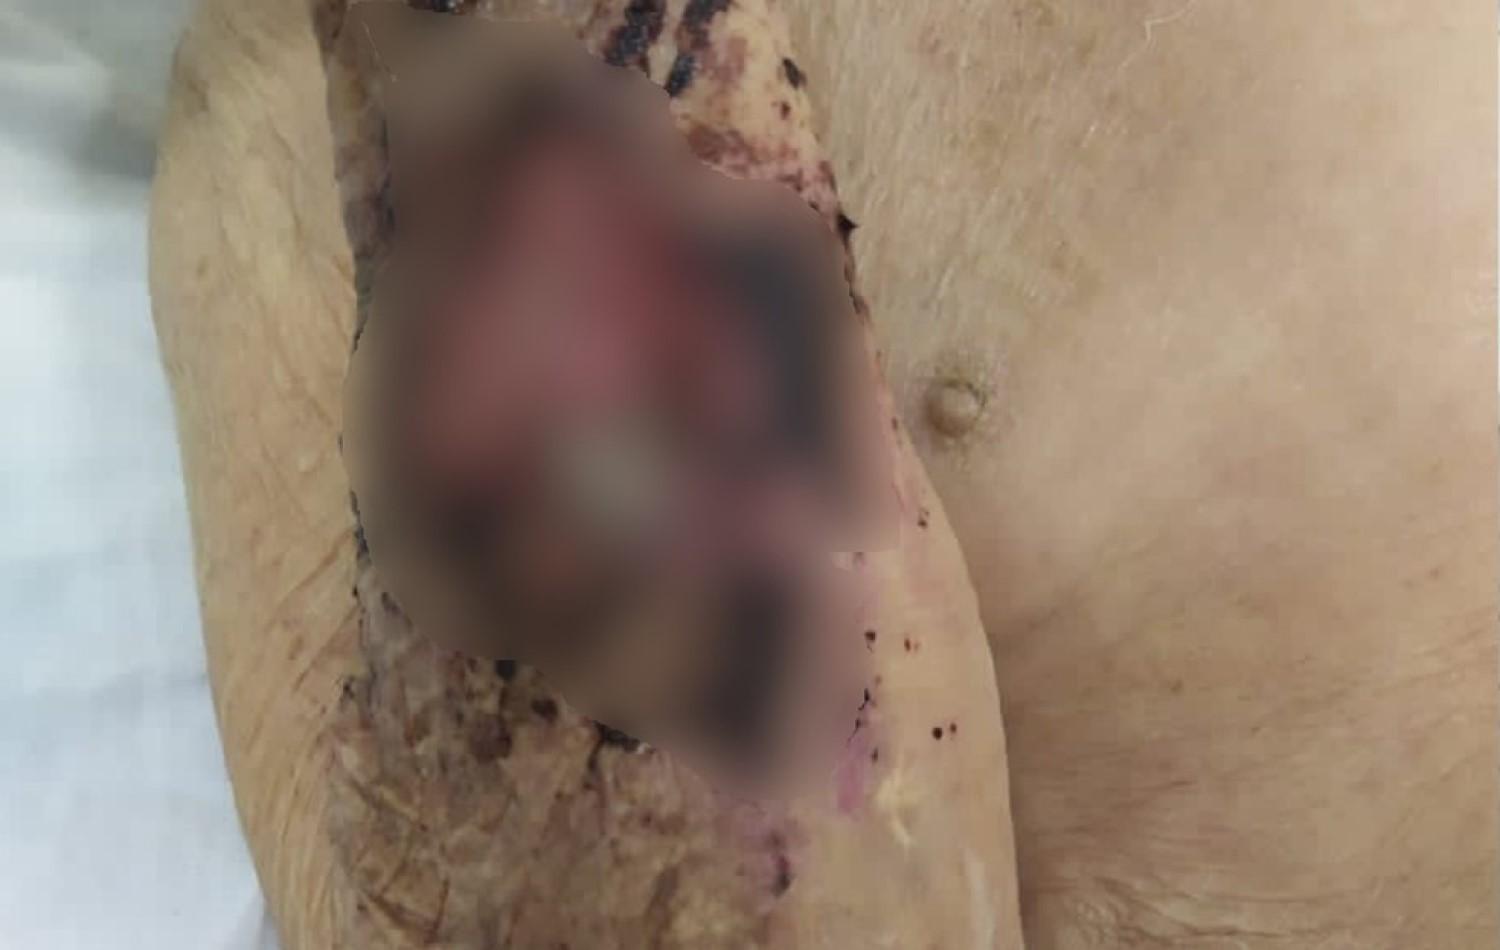 Filho é preso suspeito de maus-tratos a idoso encontrado desidratado e com larvas em ferida, em Goiânia